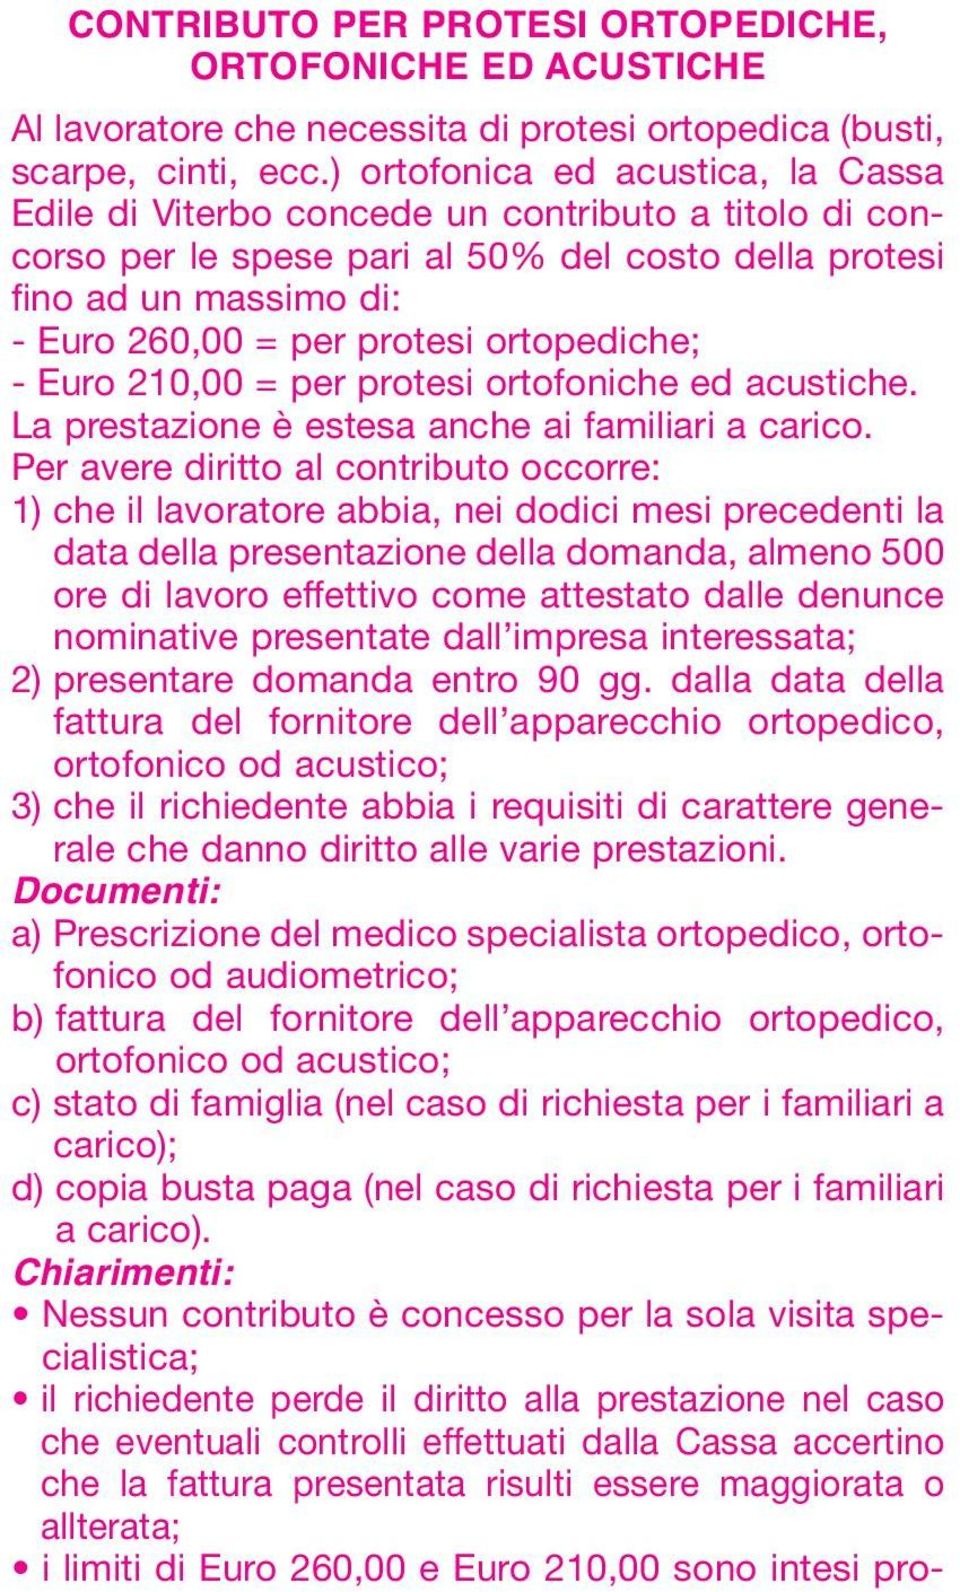 ortopediche; - Euro 210,00 = per protesi ortofoniche ed acustiche. La prestazione è estesa anche ai familiari a carico.